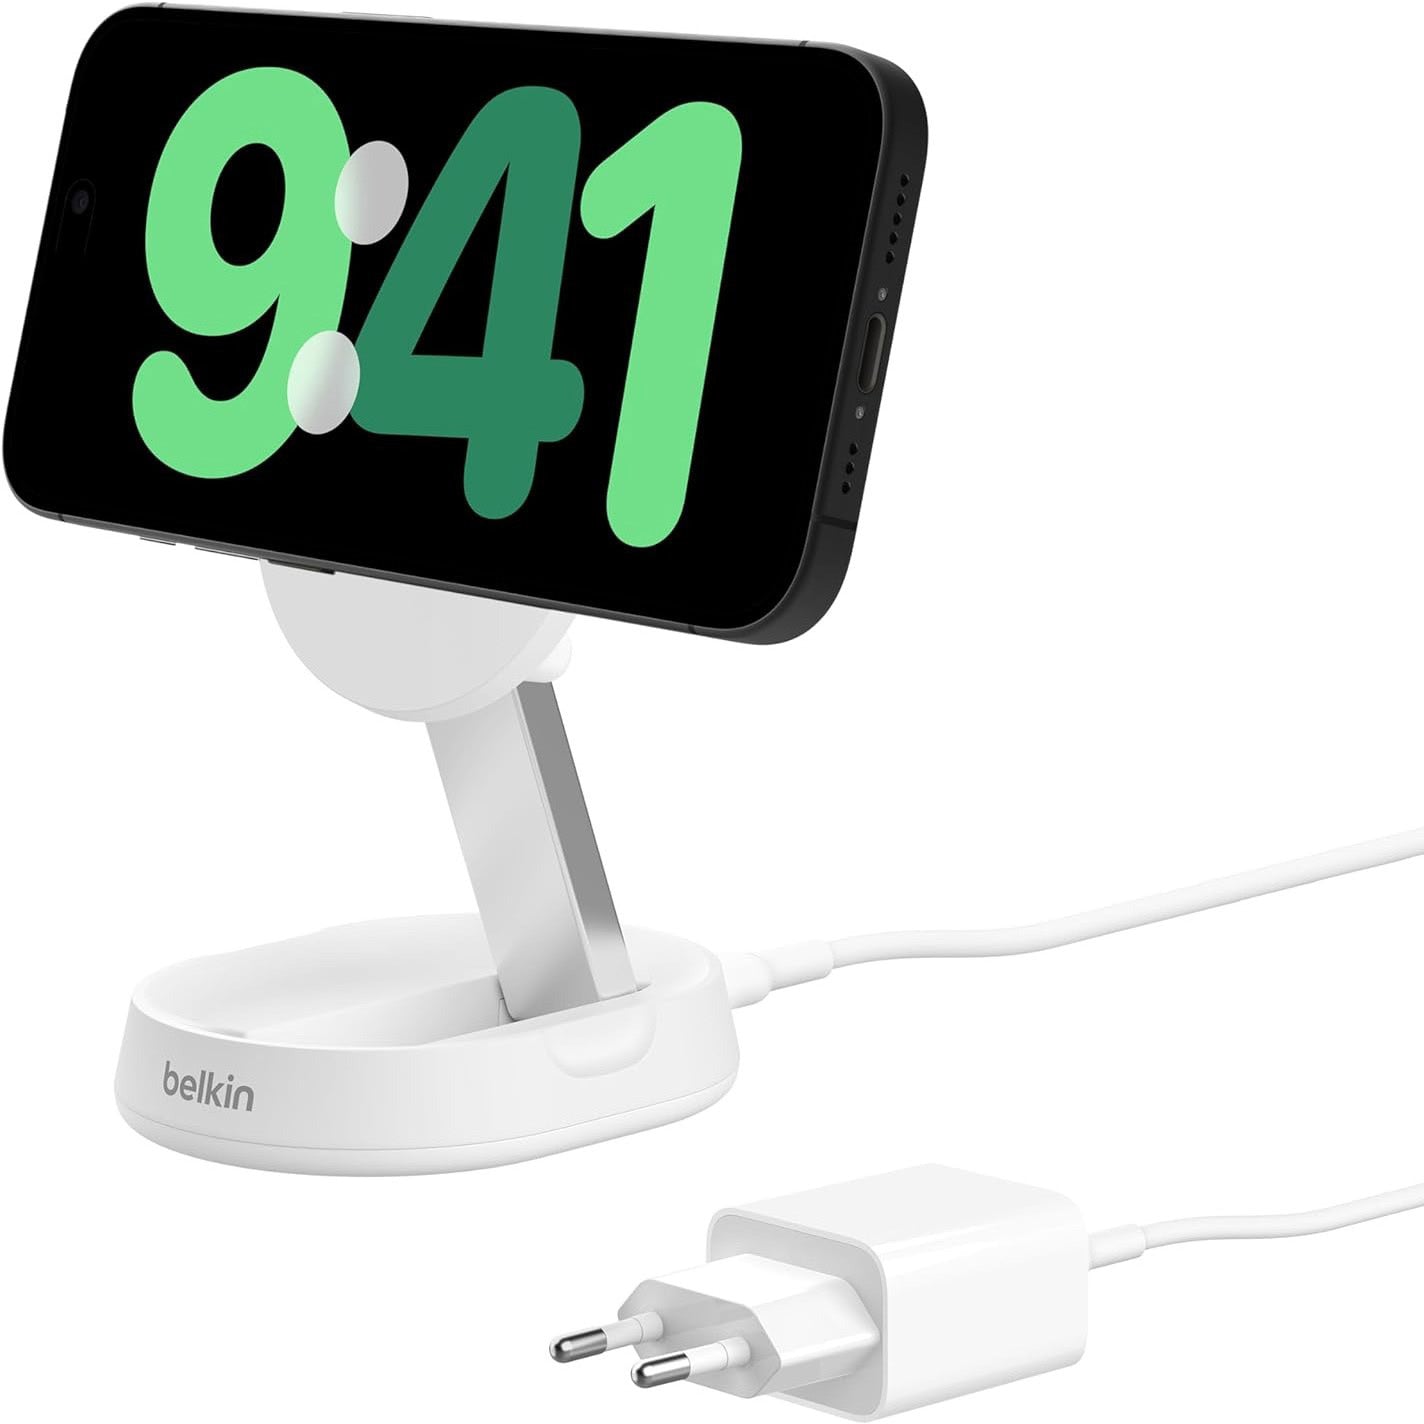 Drahtloses Ladegerät Belkin Boost Pro Convertible Qi2 15W WIA008 für iPhone mit MagSafe + PSU, Weiß